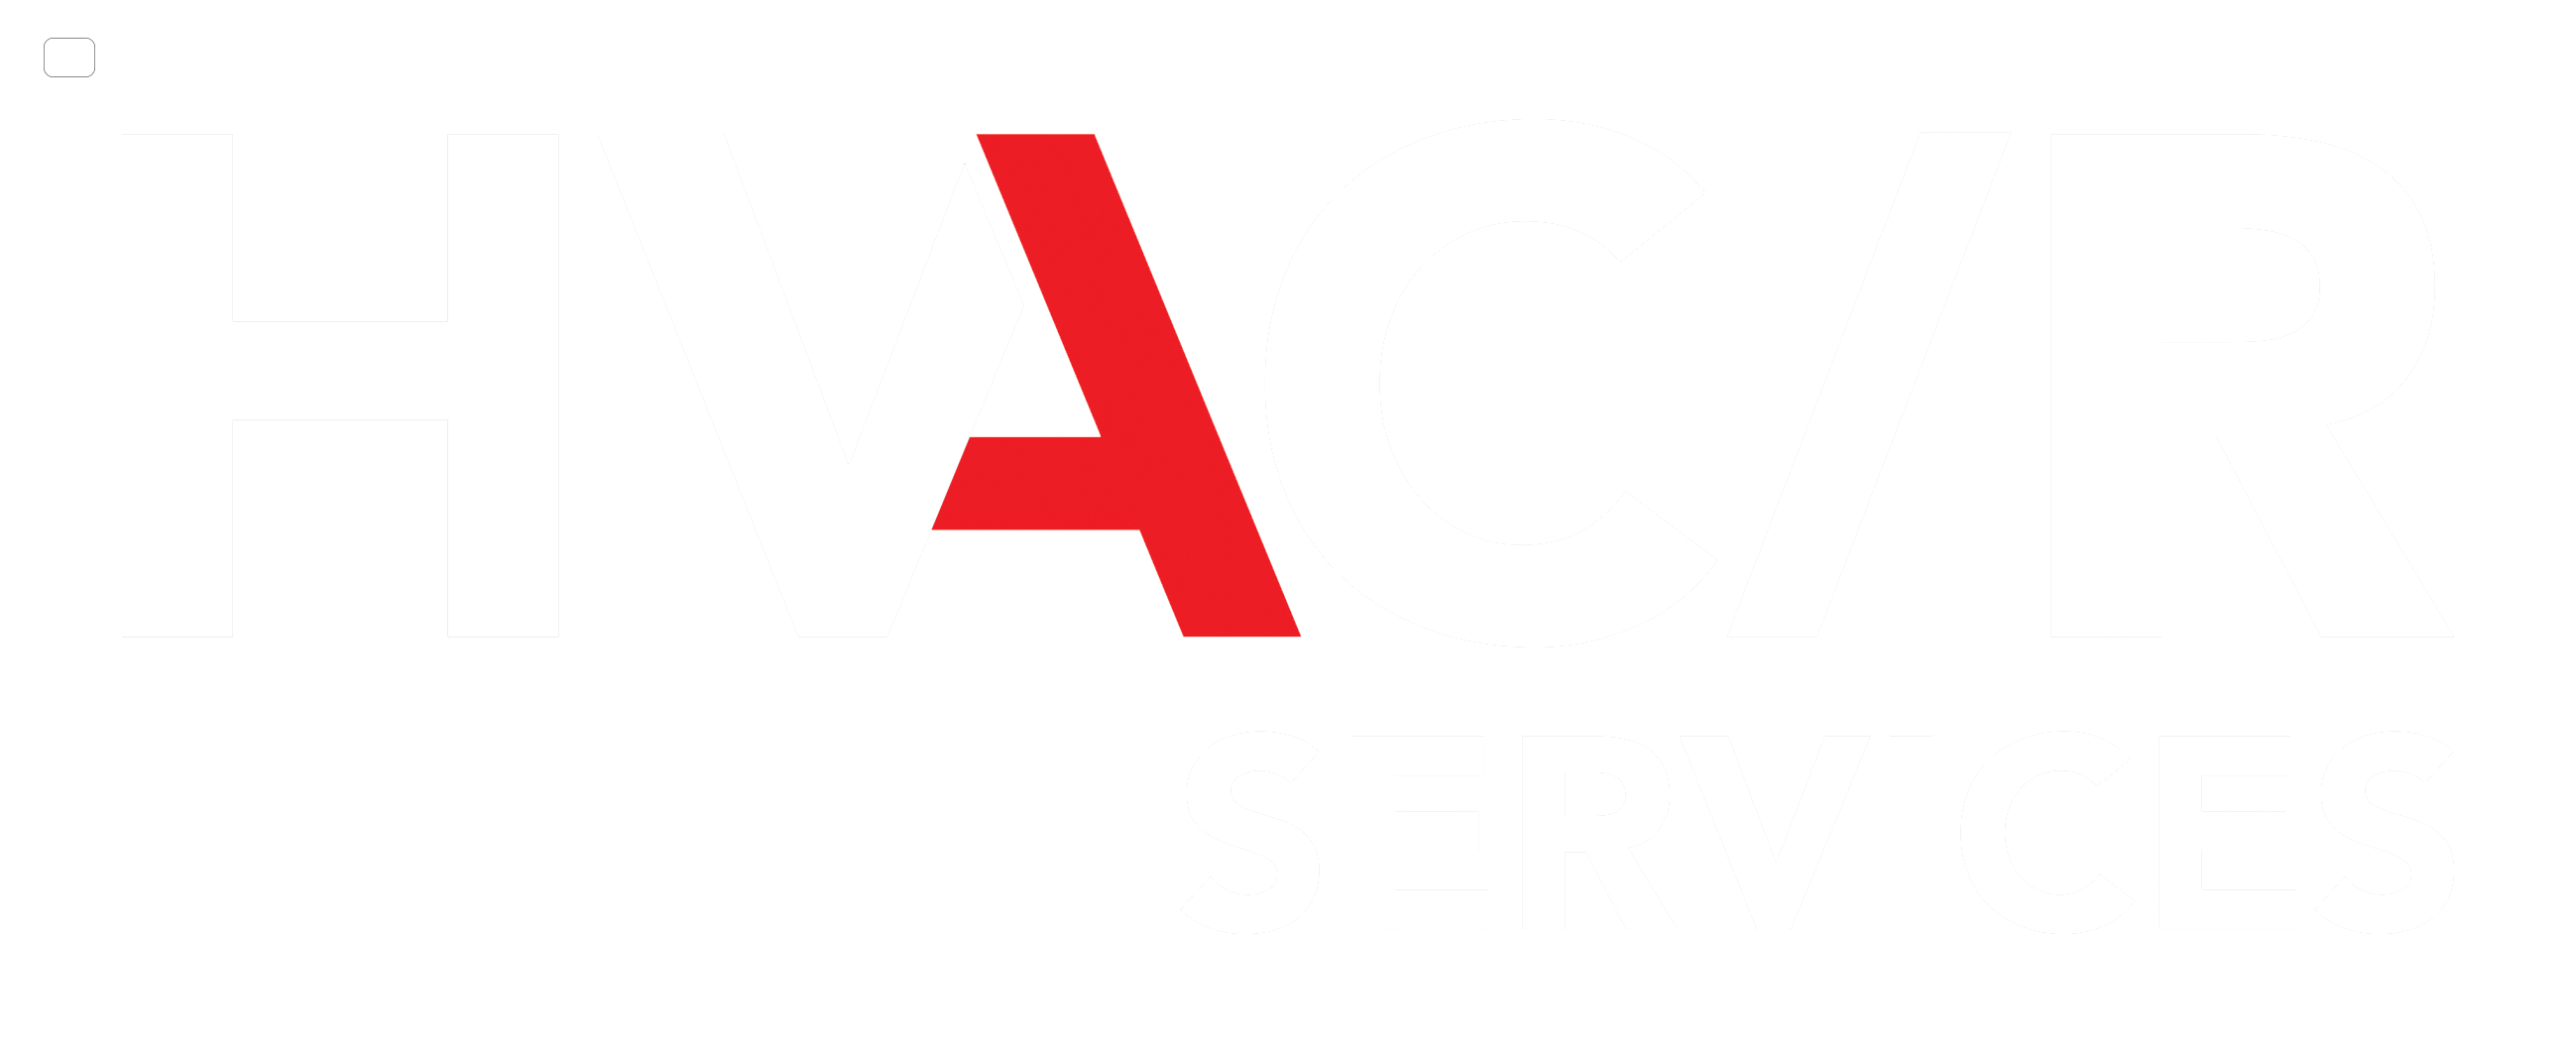 HVAC/R Services Australia